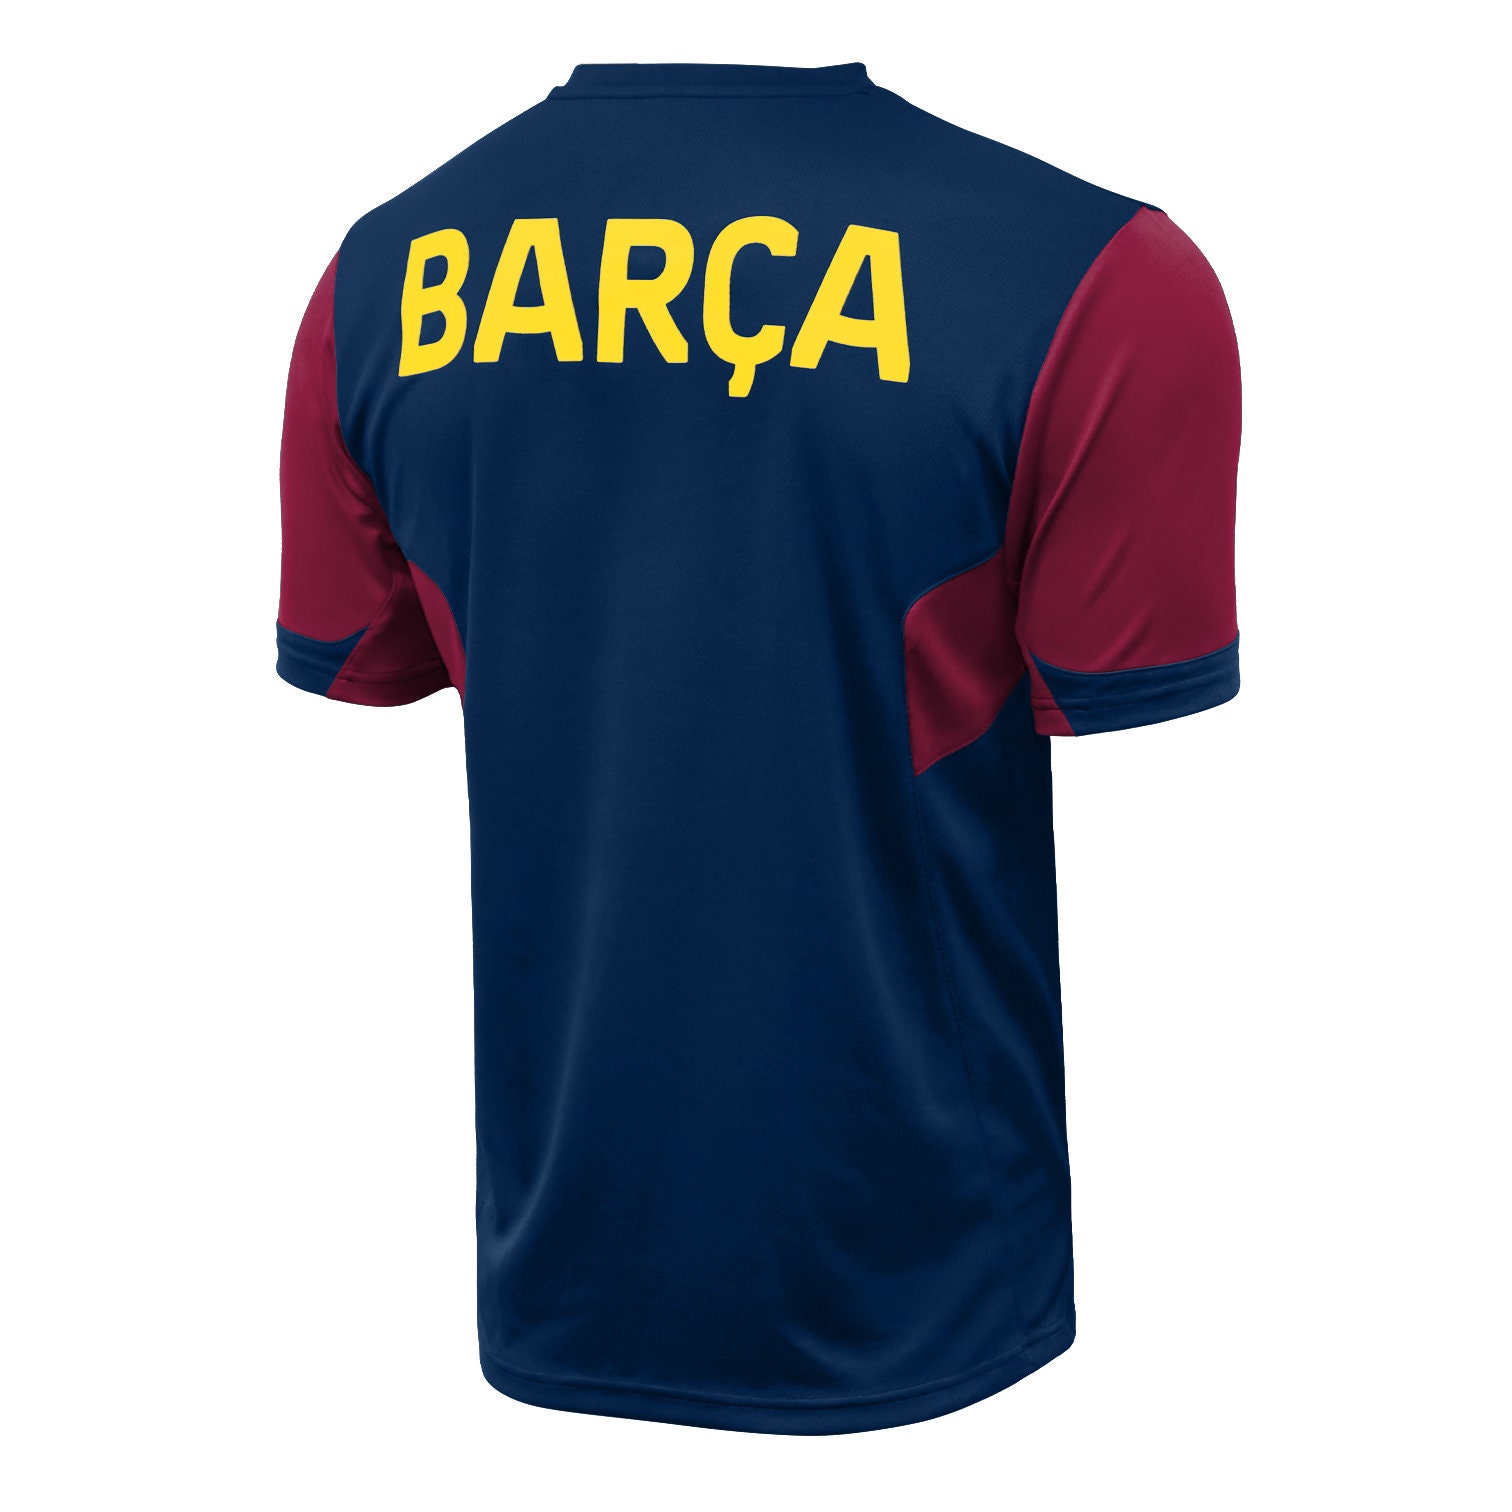 La estrambótica camiseta para el 125 aniversario del Barça que